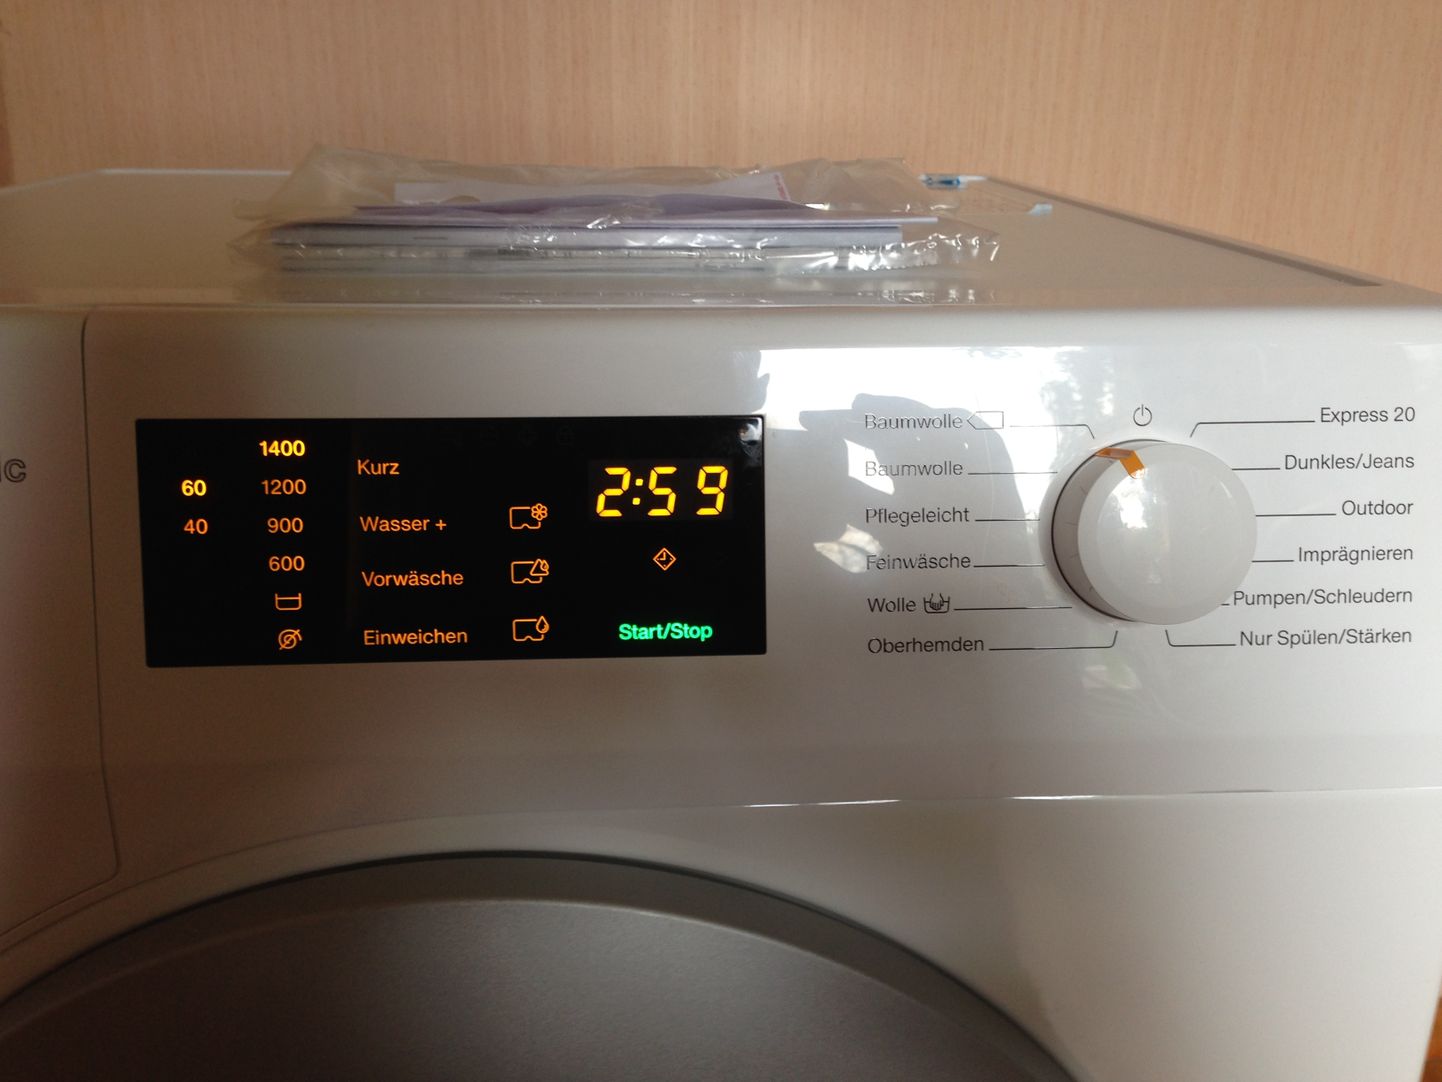 "Нам продали подержанную стиральную машину под видом новой?" - недоумевает Александр.